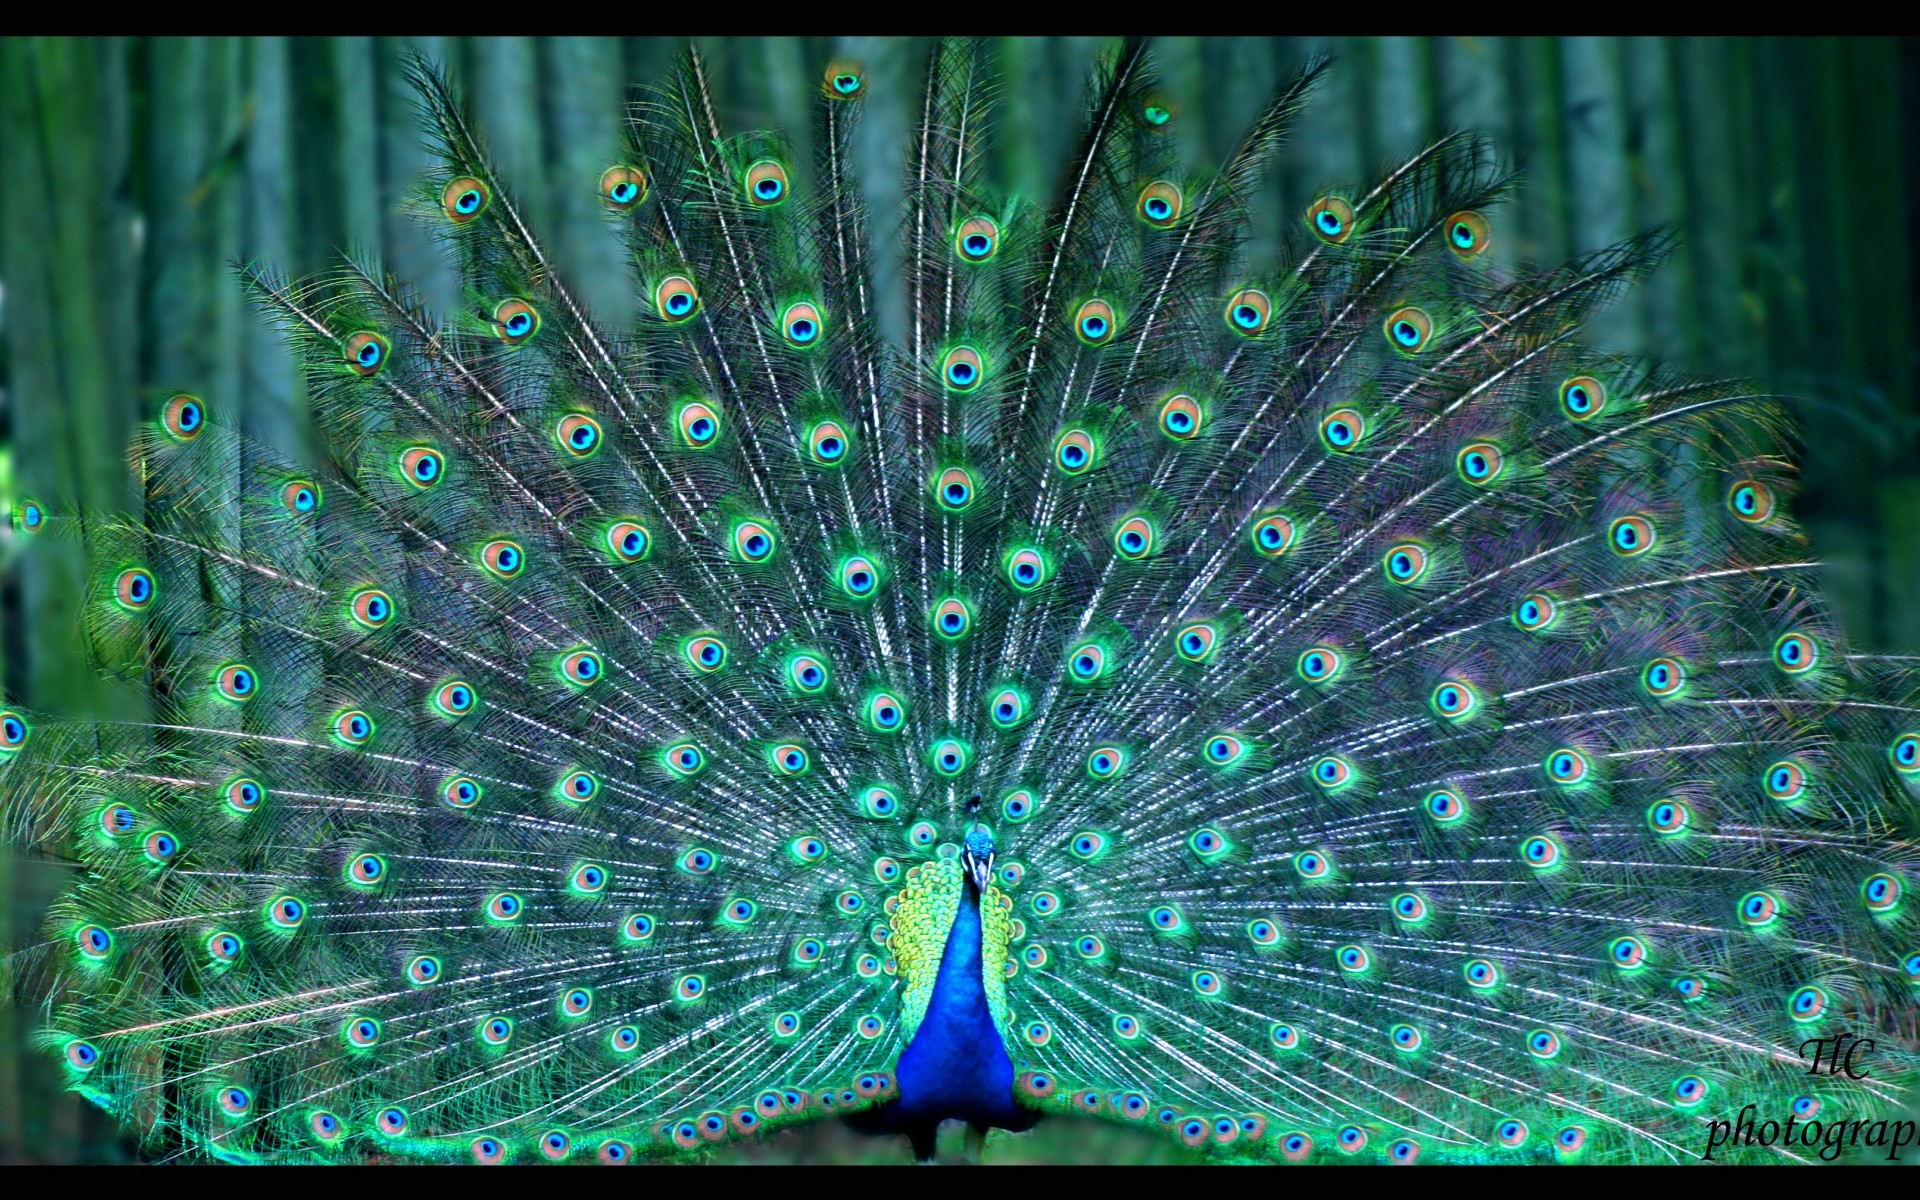 Peacock Puter Wallpaper Desktop Background Id